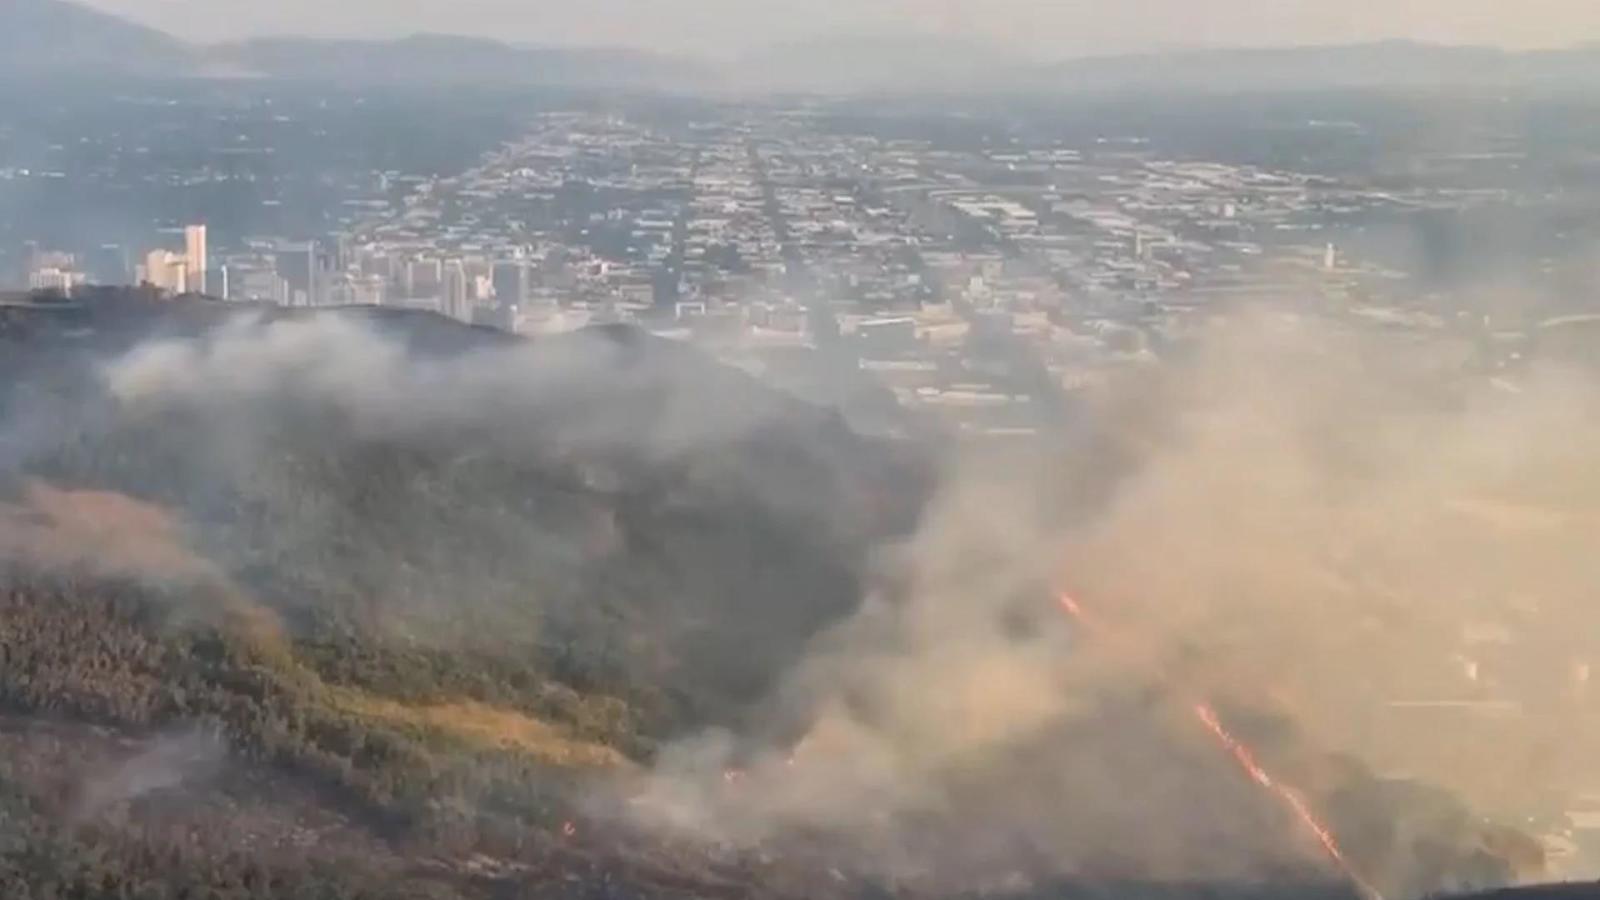 ソルトレイクシティ議事堂付近を含む西部で山火事が発生し、避難勧告が出された。